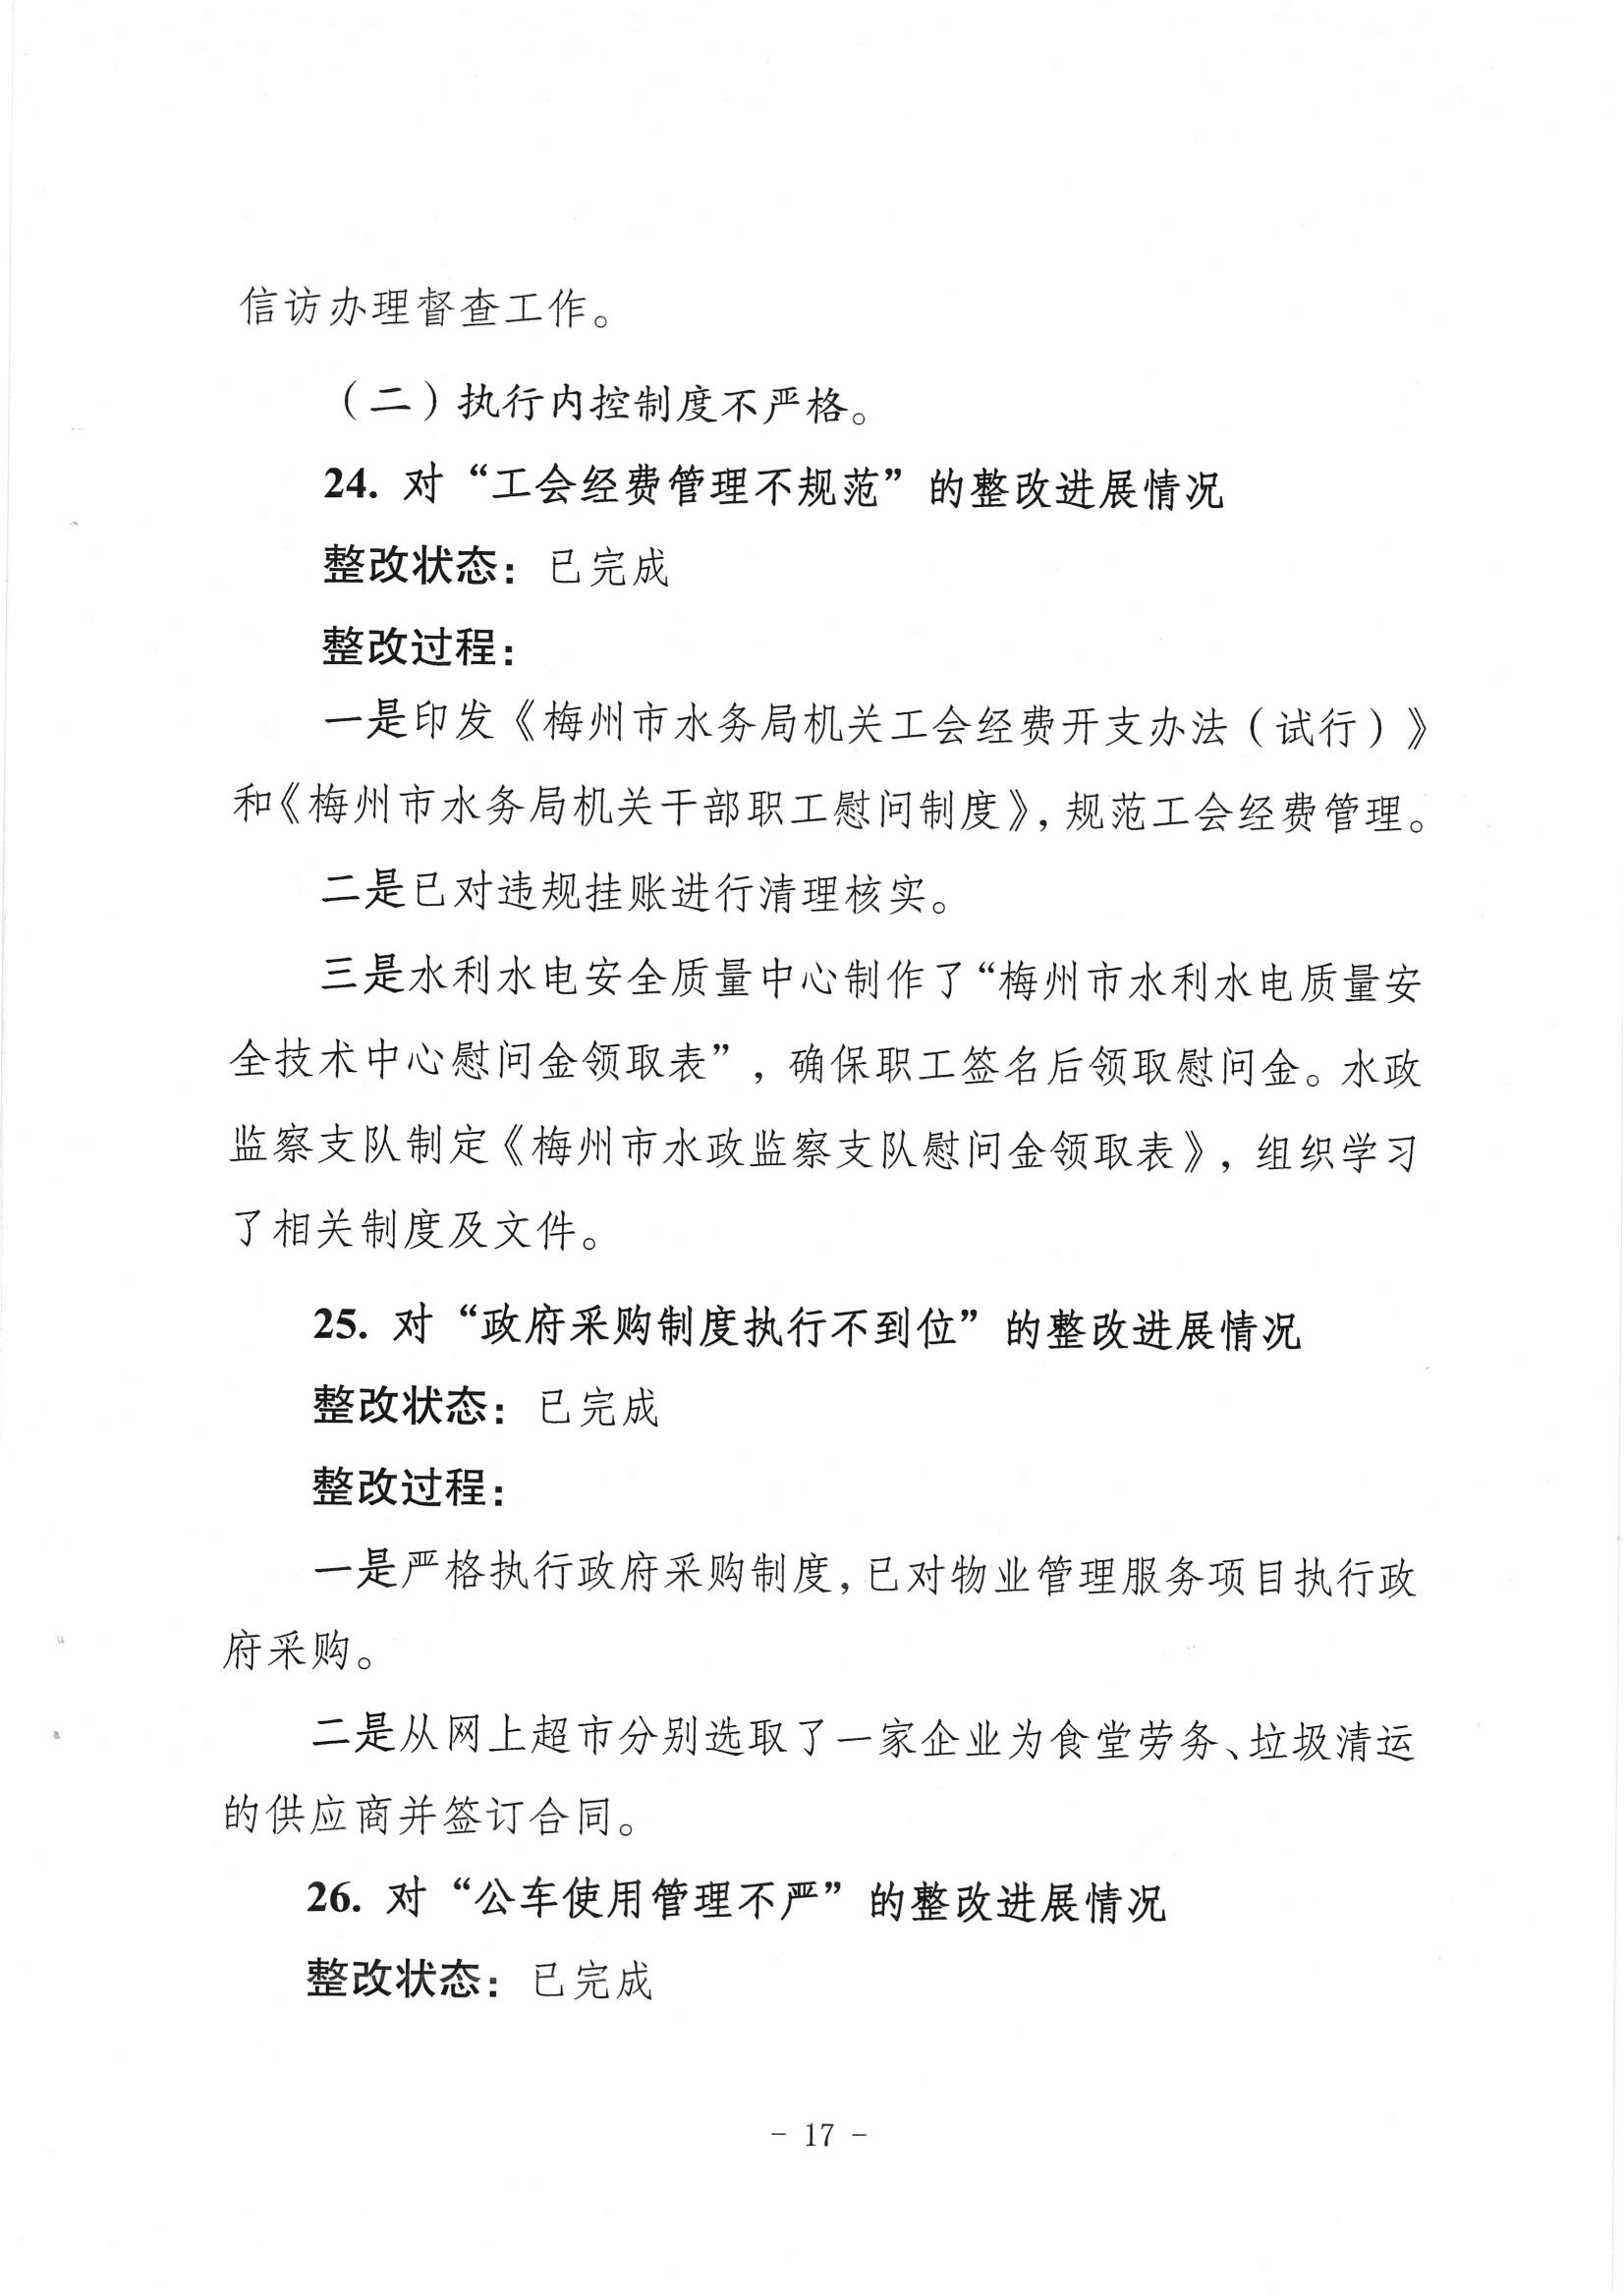 中共梅州市水务局党组关于落实八届市委第三轮巡察反馈意见的整改进展情况报告_16.jpg